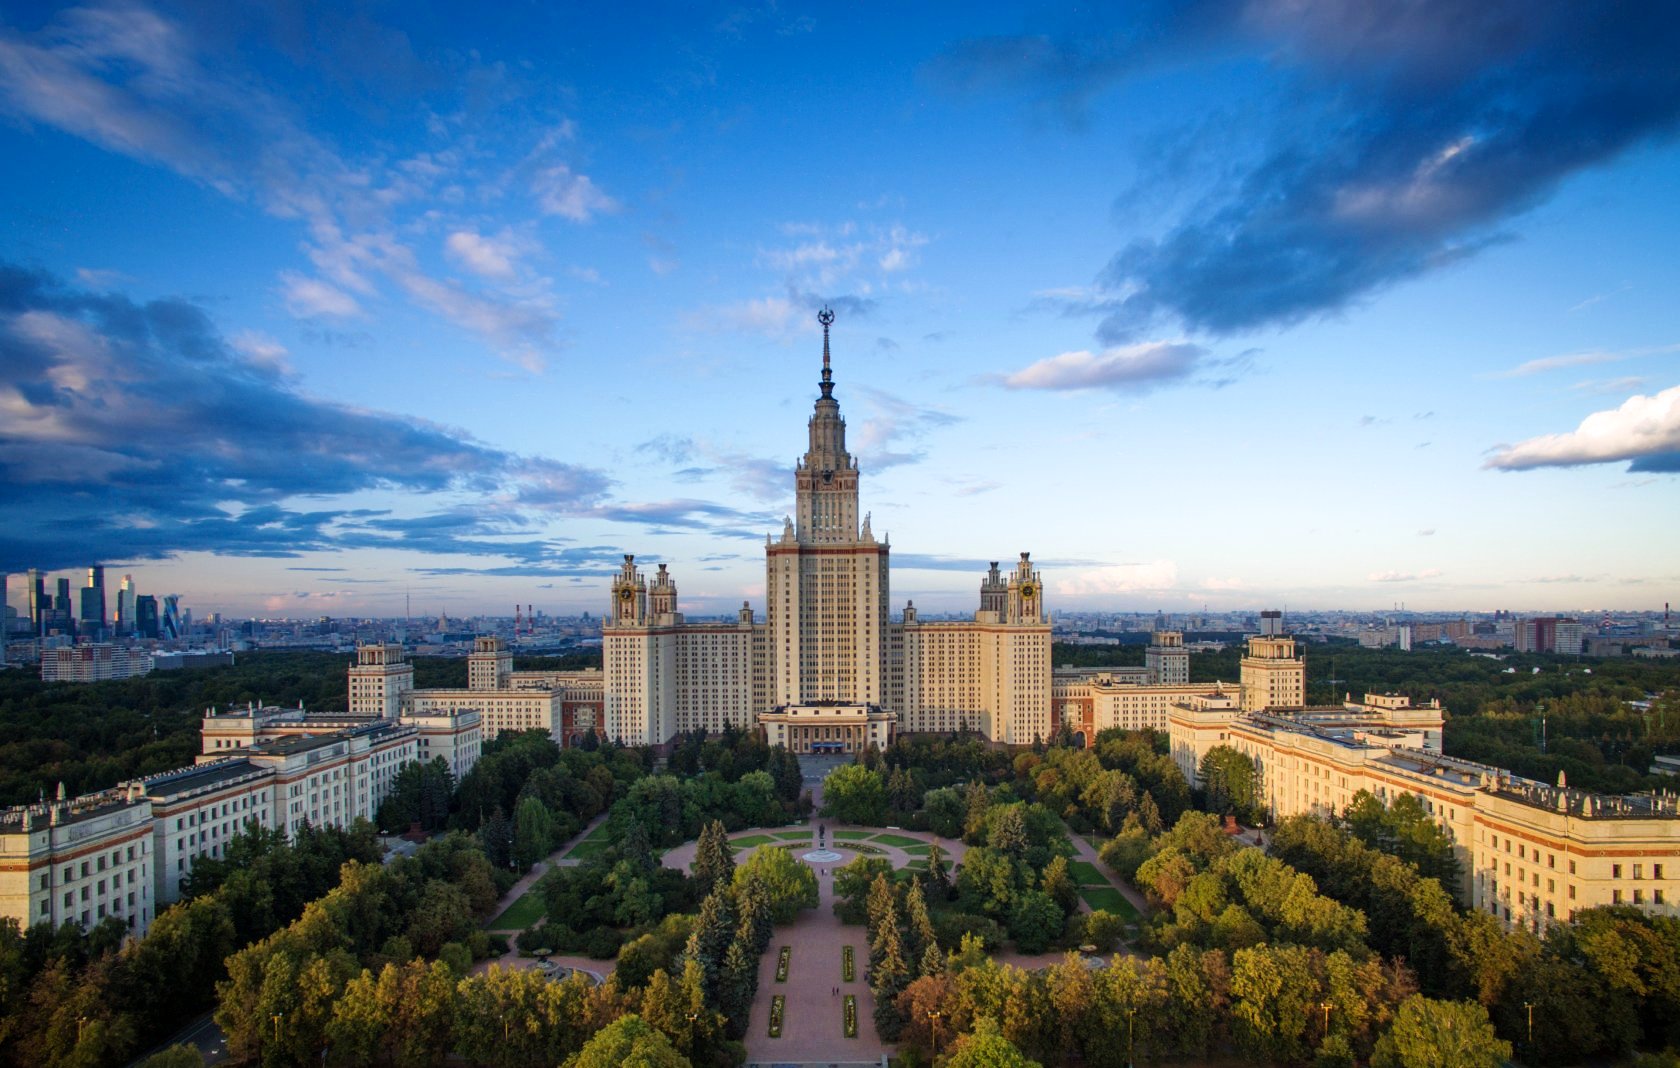 Цена однокомнатной квартиры в Новосибирске соответствует стоимости учебы в МГУ